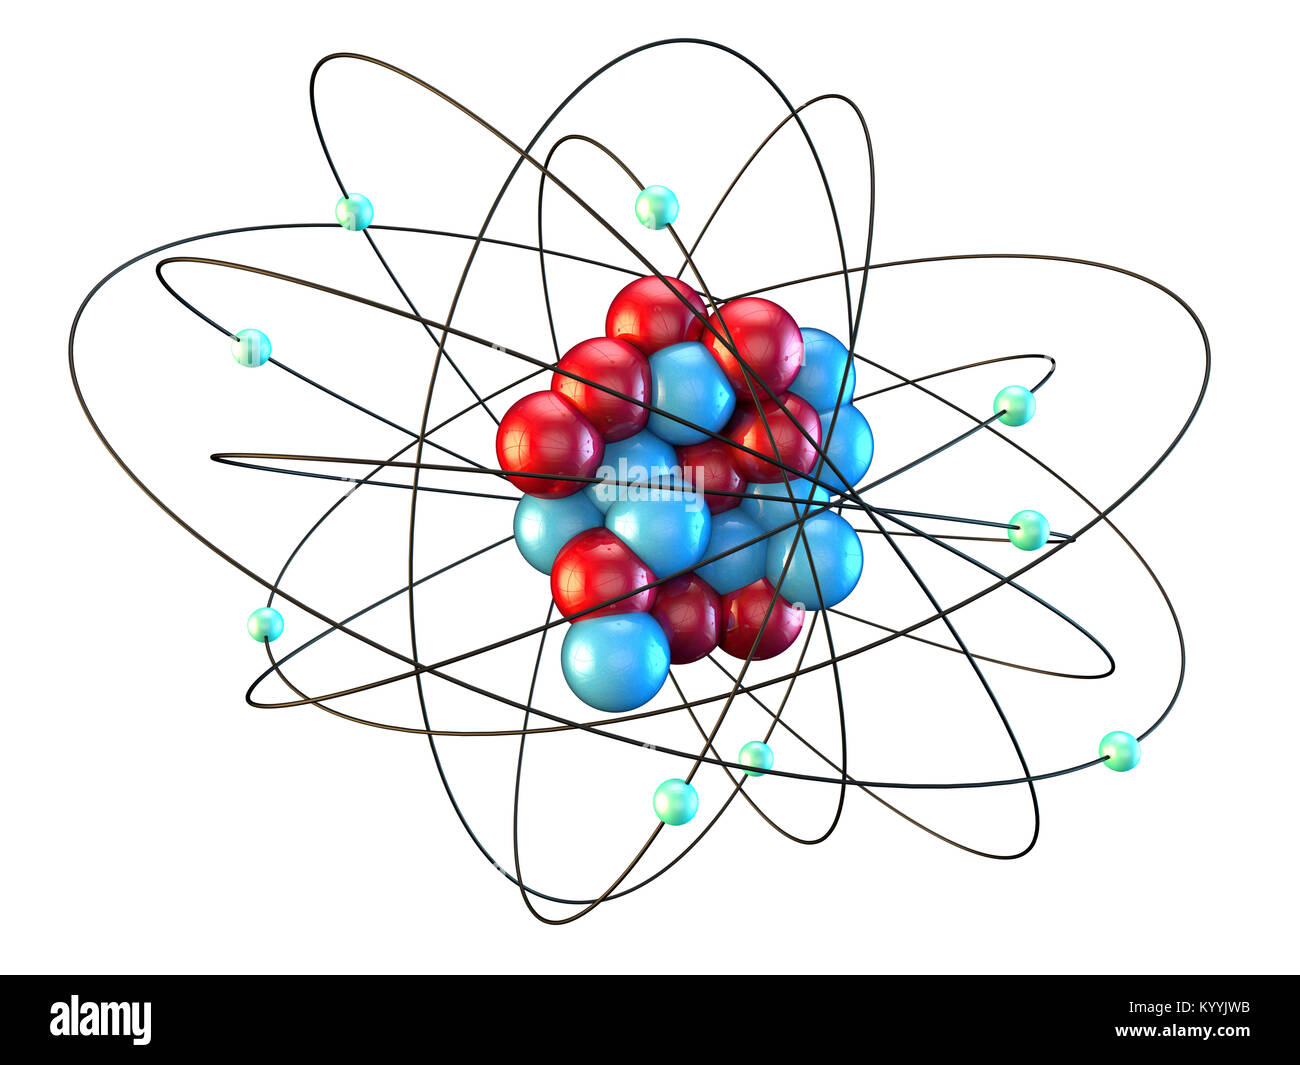 Atomo di fluoro immagini e fotografie stock ad alta risoluzione - Alamy